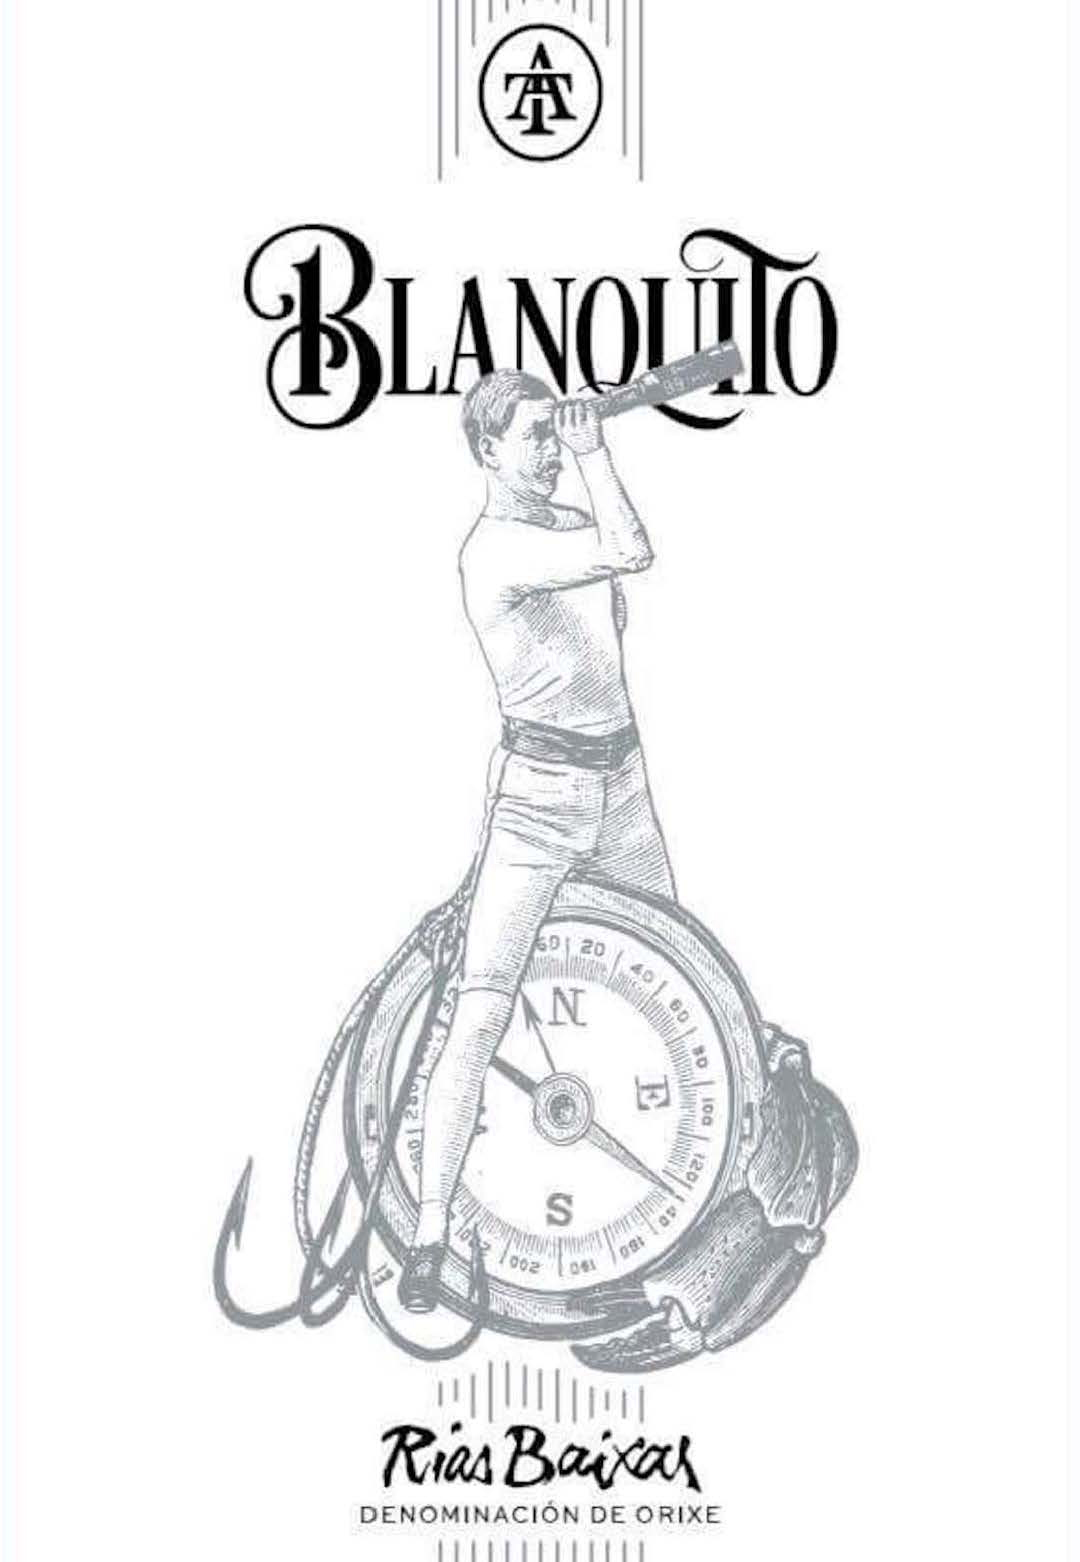 Blanquito Albarino label